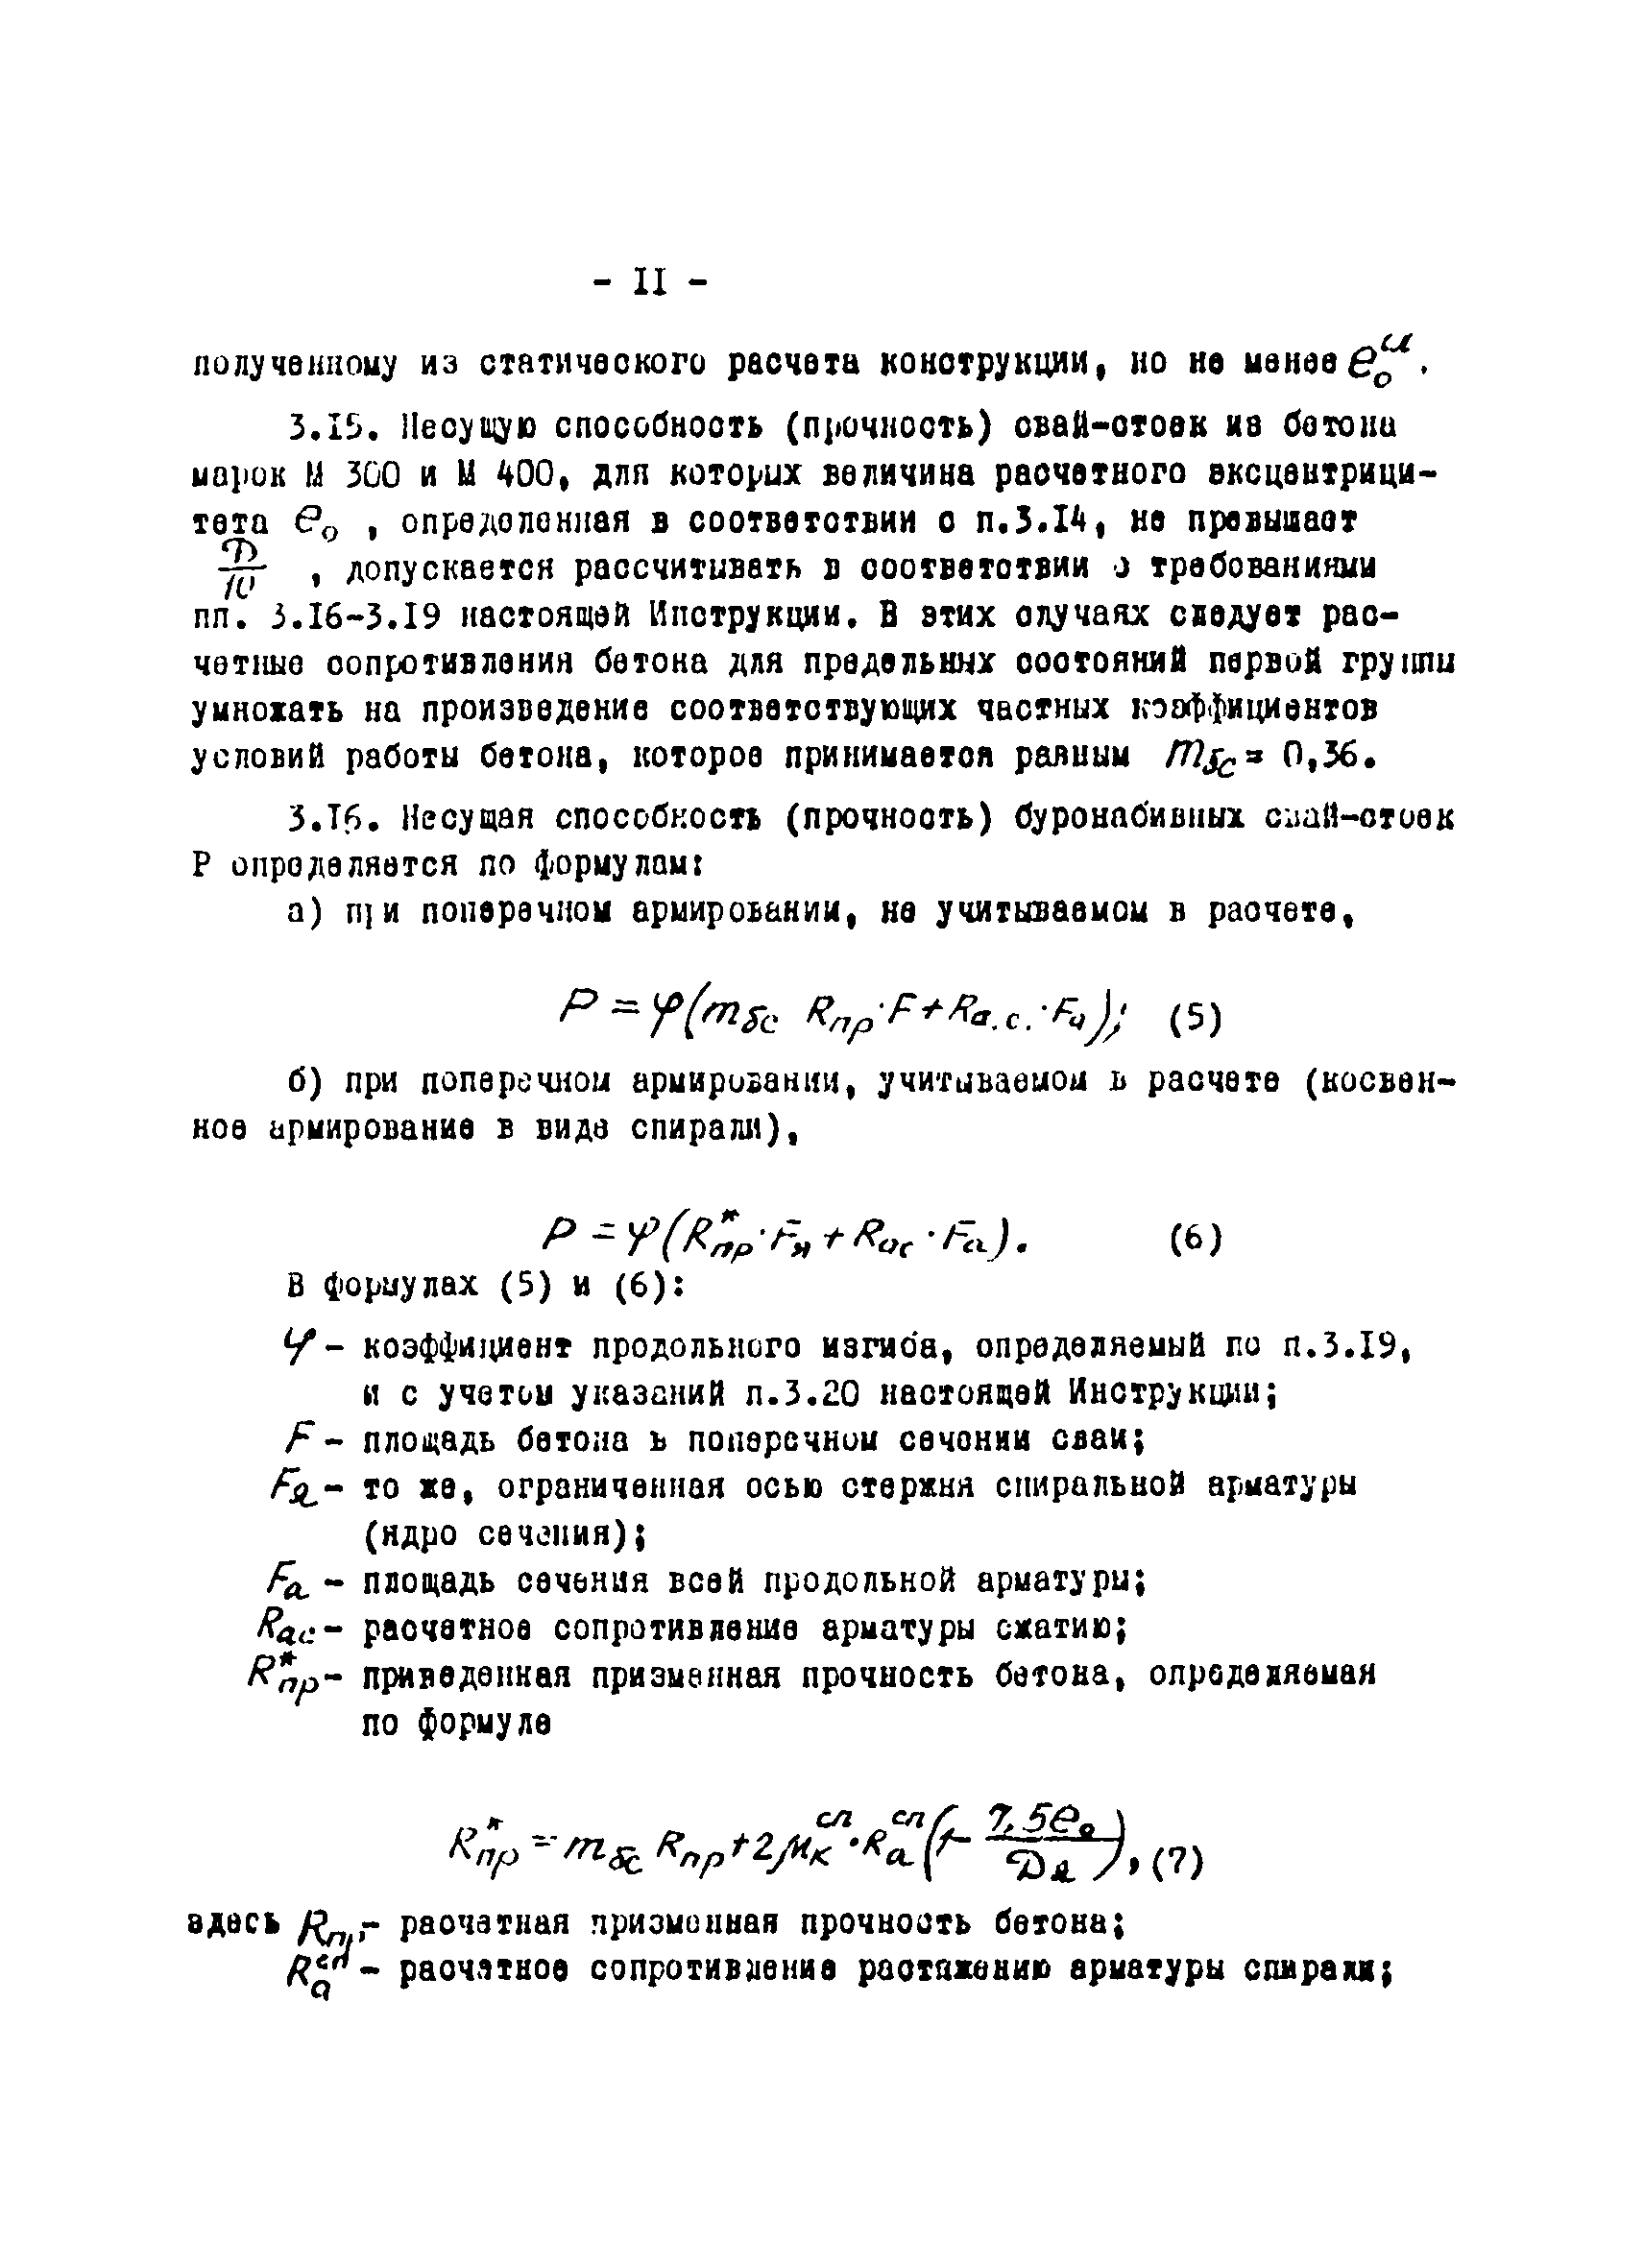 ВСН 01-76/Минцветмет СССР